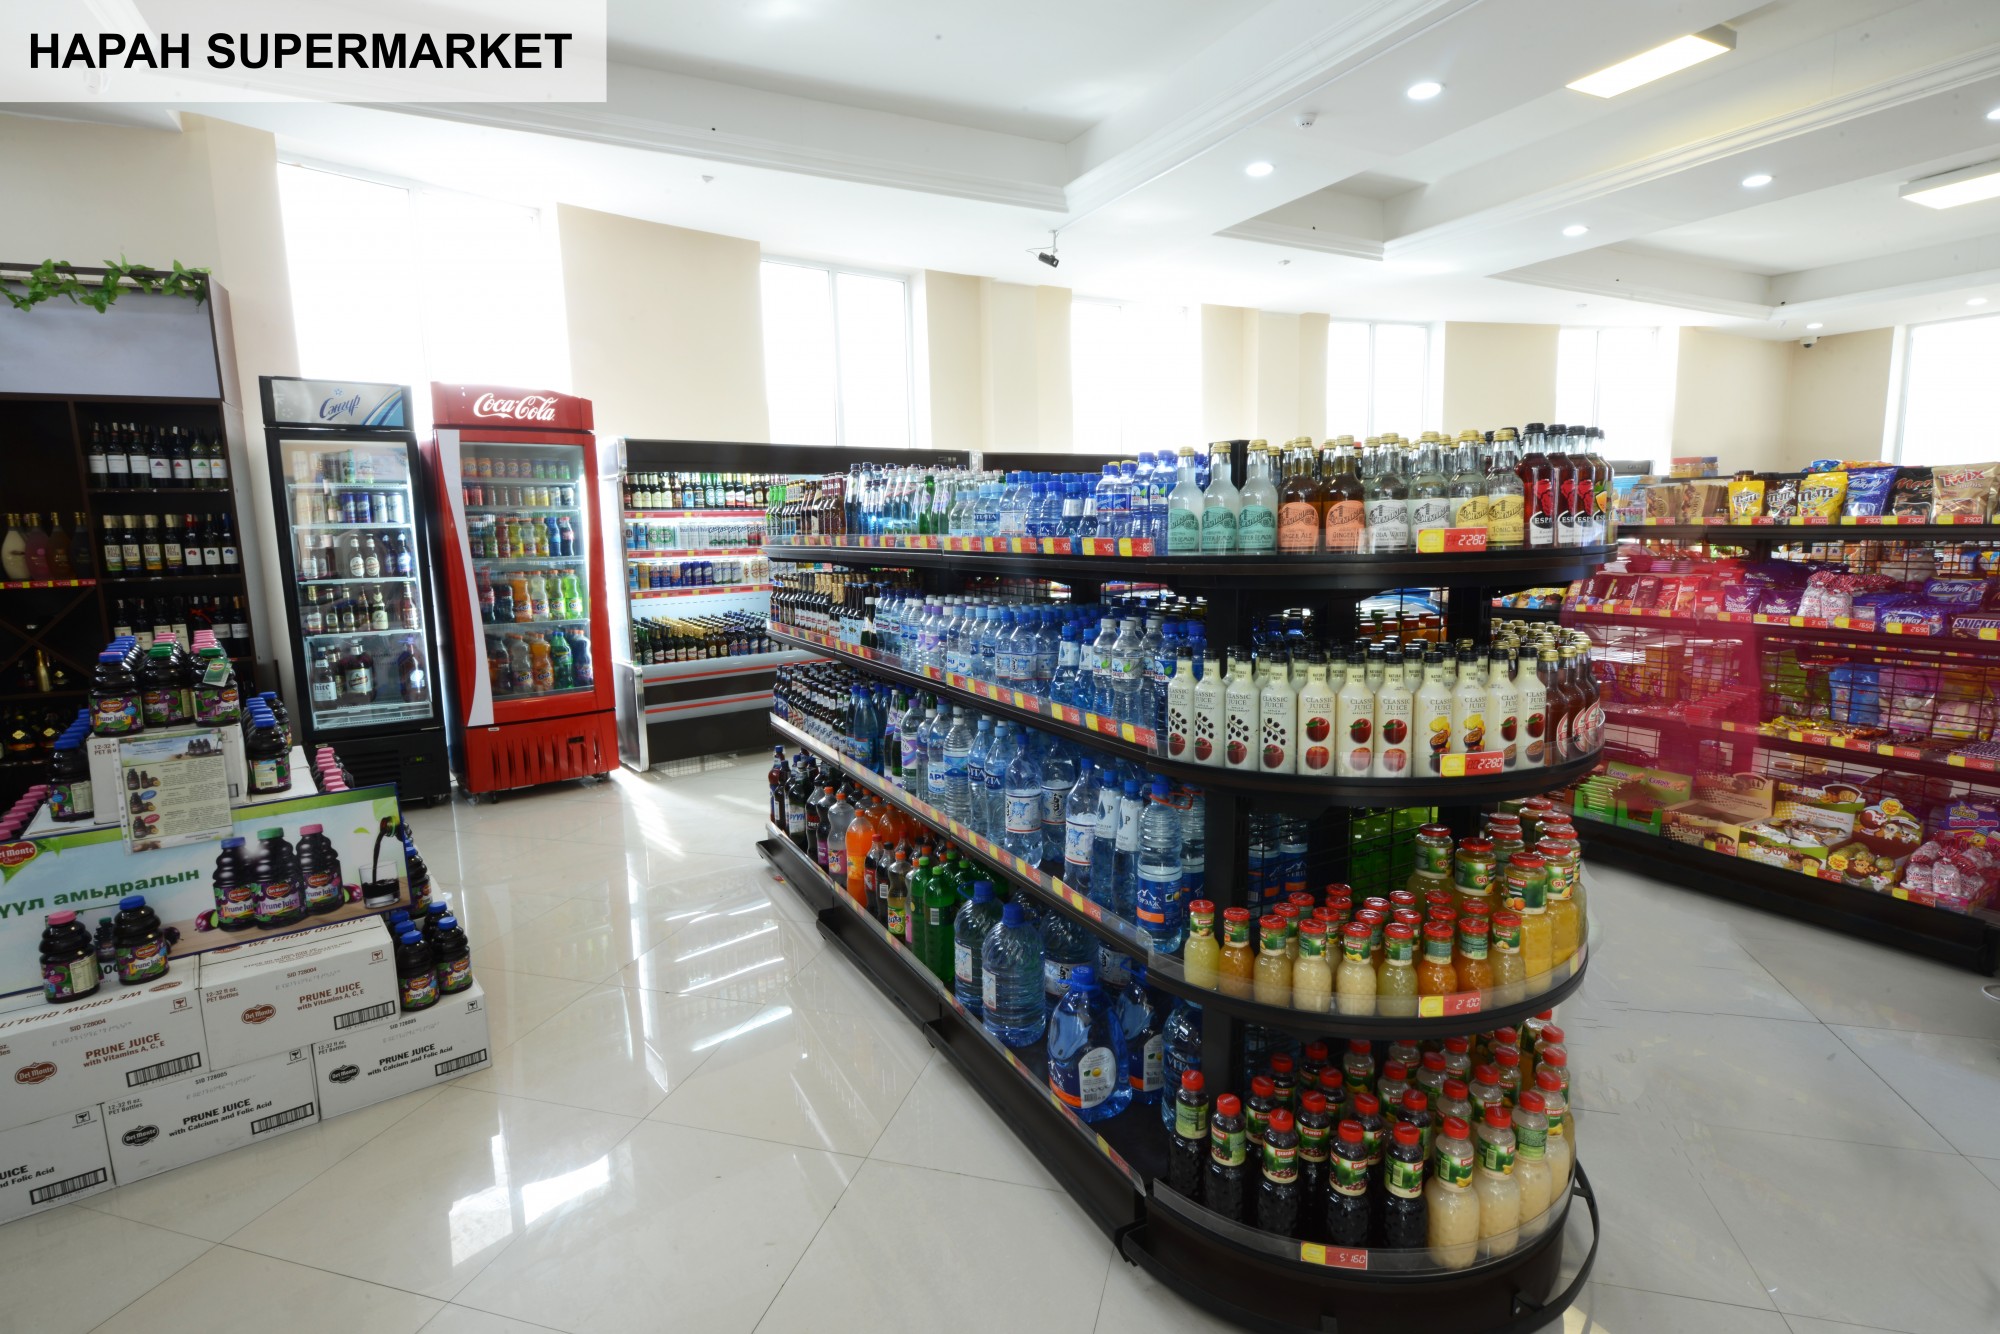 Өргөн сонголт бүхий “Наран супермаркет” сүлжээ дэлгүүр